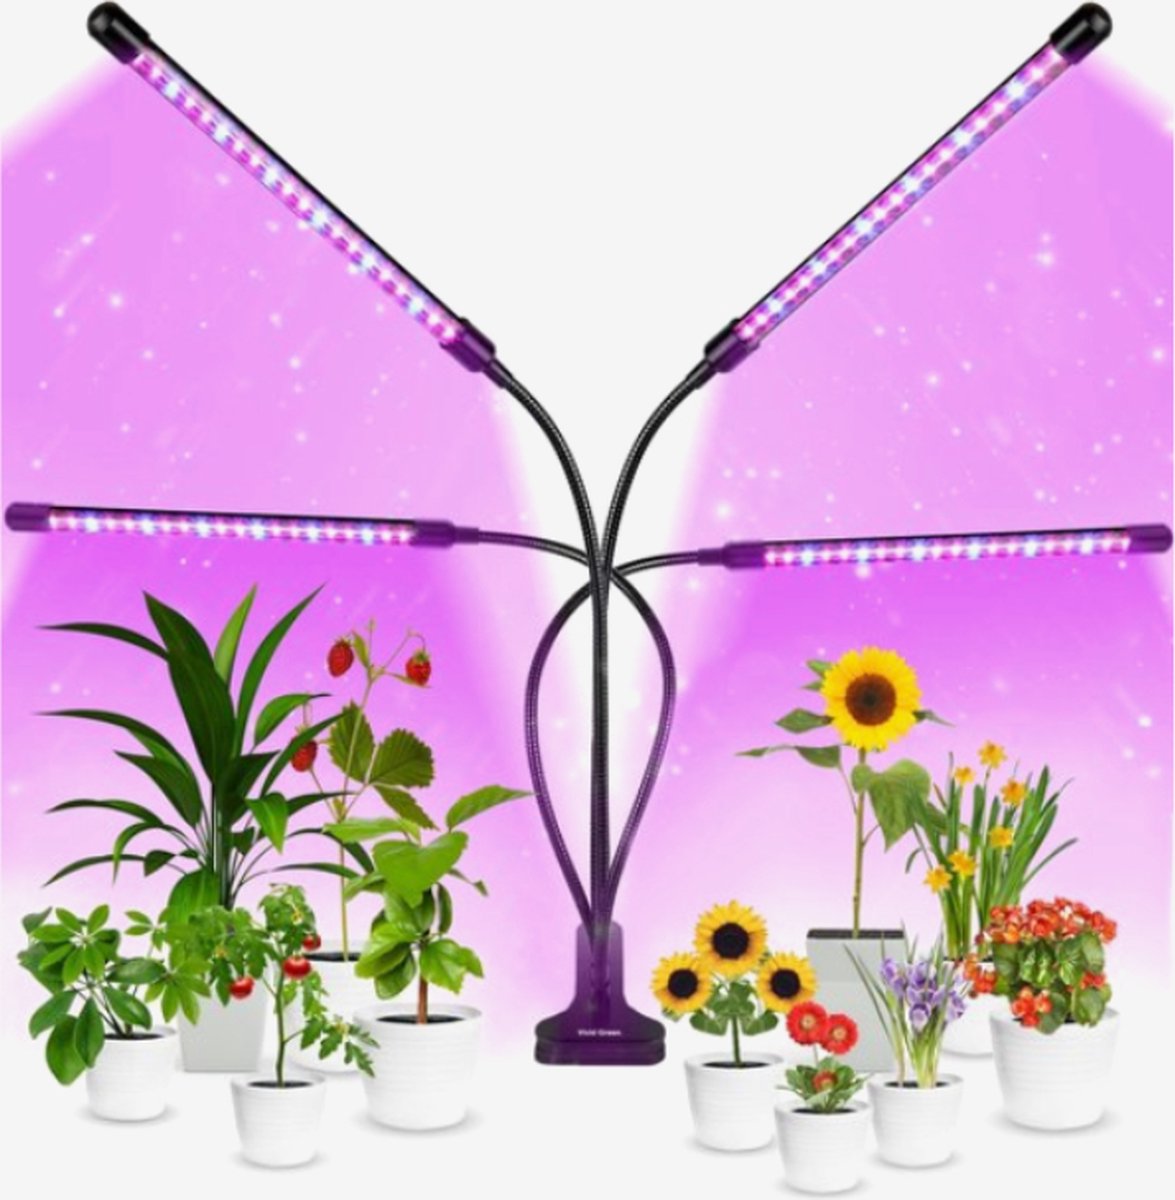 Kweeklampen voor Planten - Groeilamp - LED Full Spectrum - 40 Watt - Automatische Timer 3-9-12 uur - Inclusief Adapter - Merkloos